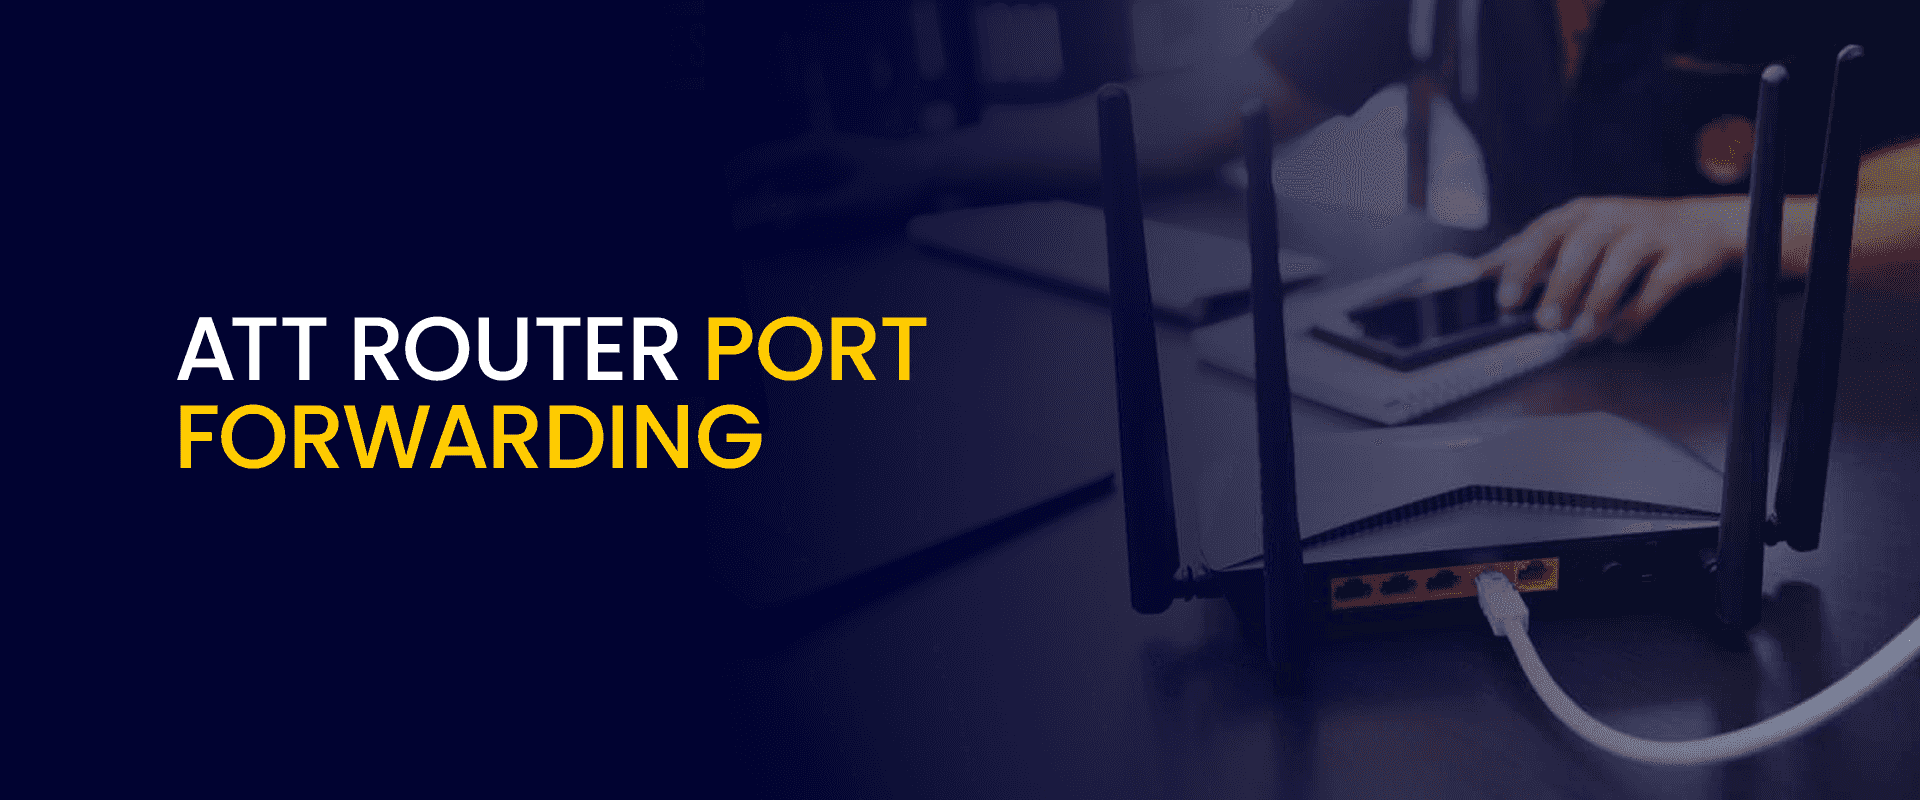 ATT Router Port Forwarding